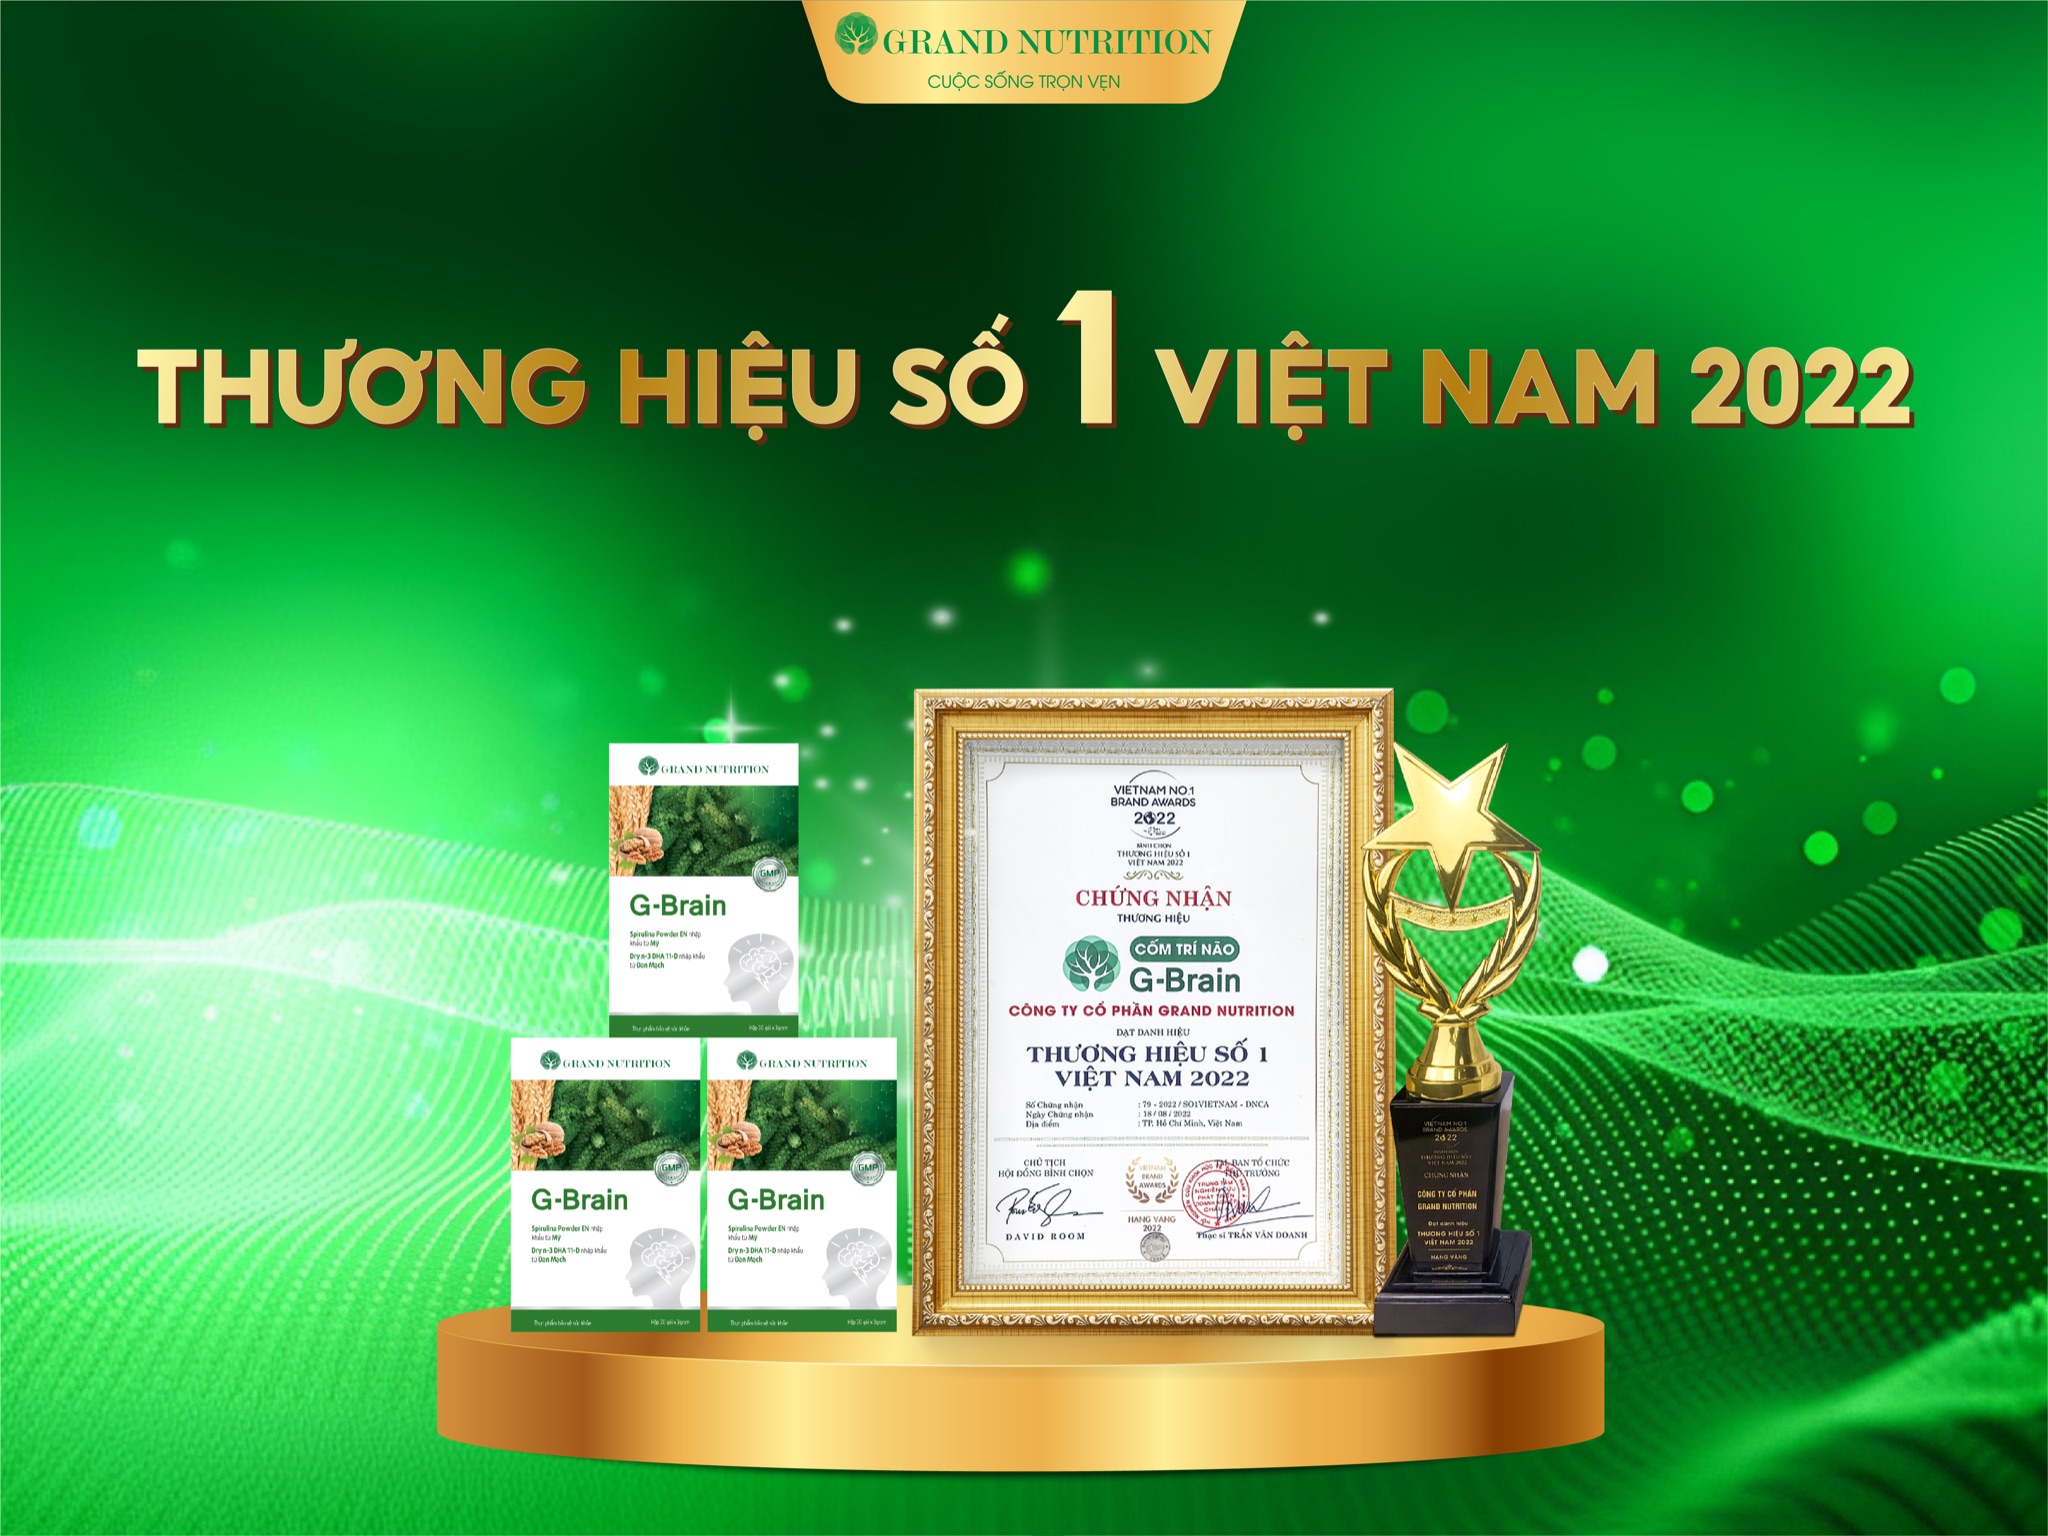 Thực phẩm bảo vệ sức khỏe G-Brain của Grand Nutrition đạt chứng nhận thương hiệu số 1 Việt Nam 2022